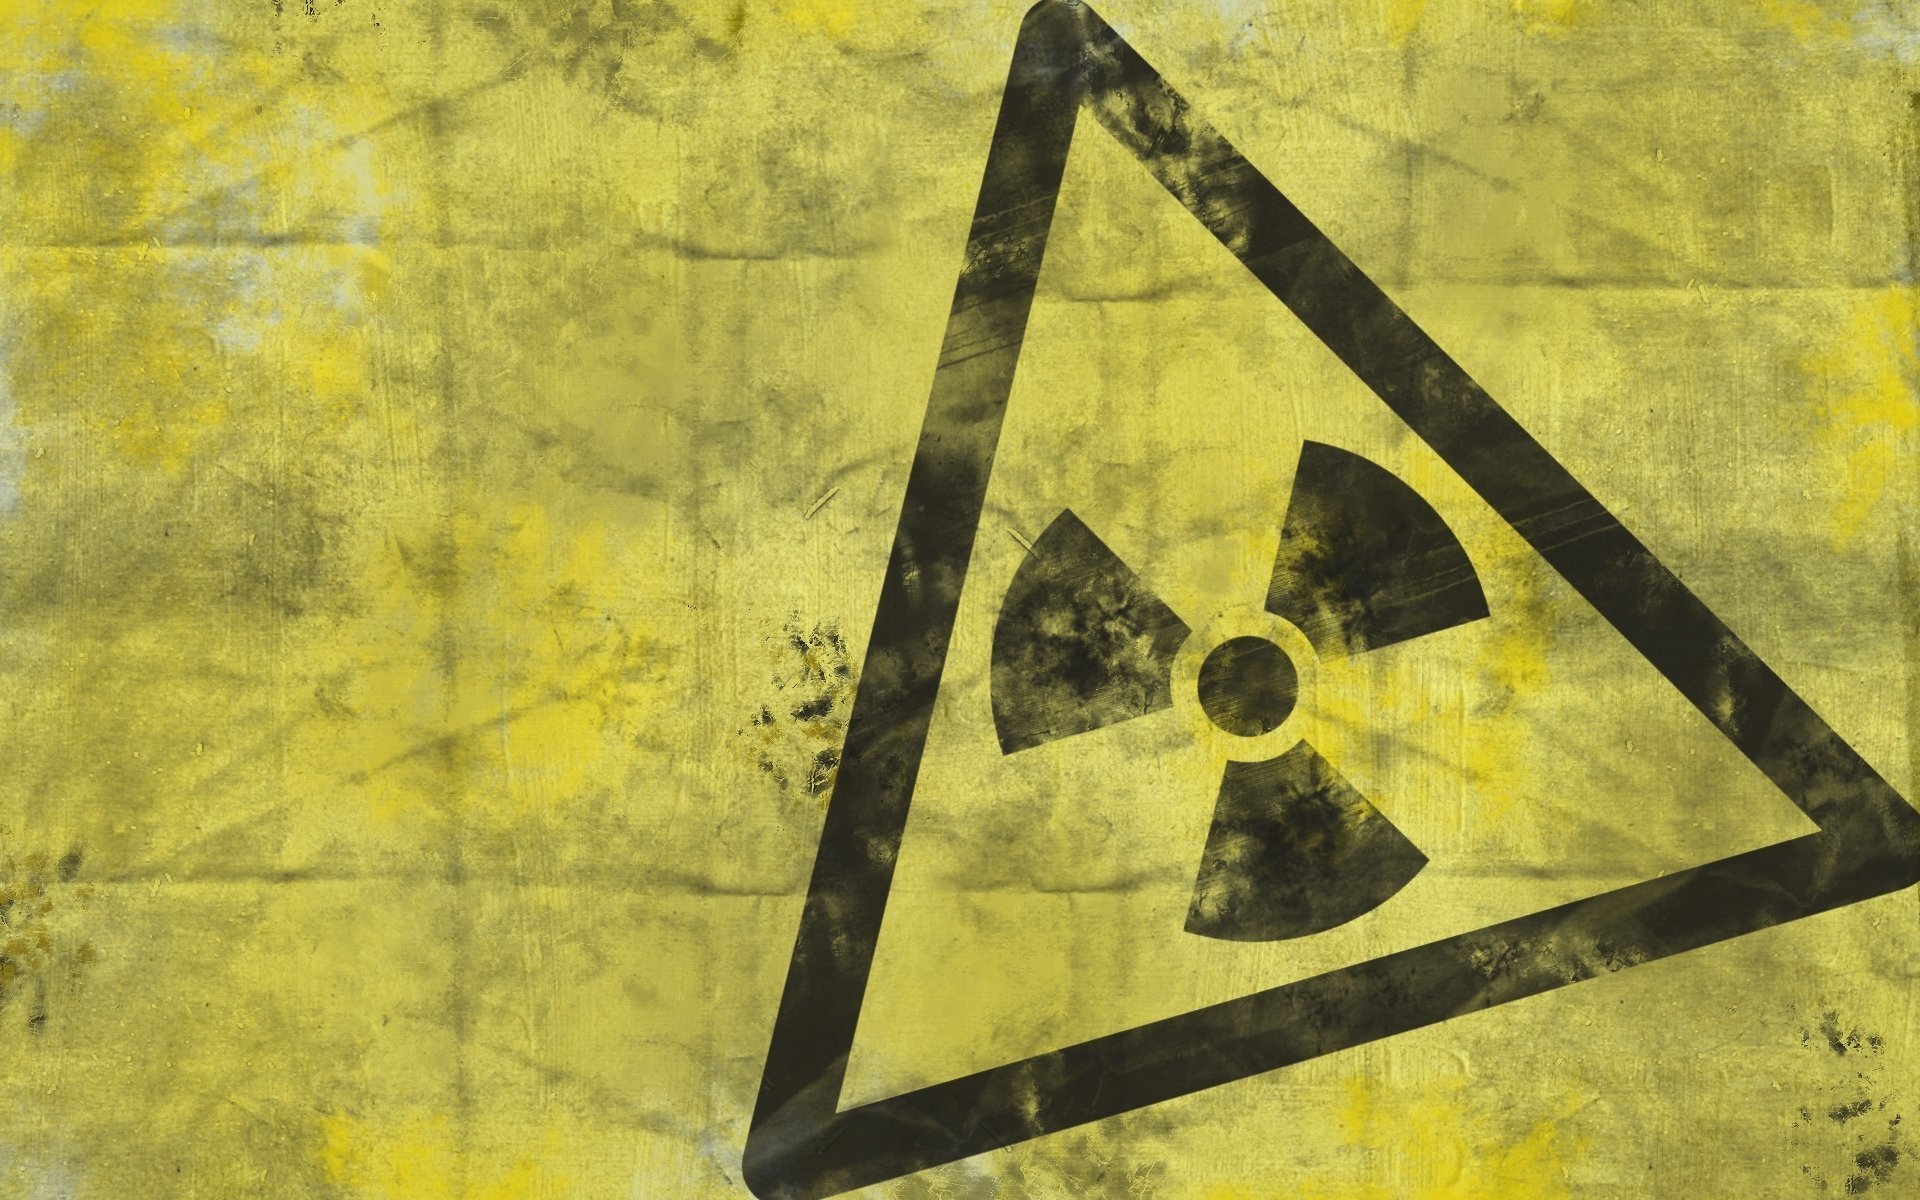 Сталкер значок радиационной опасности